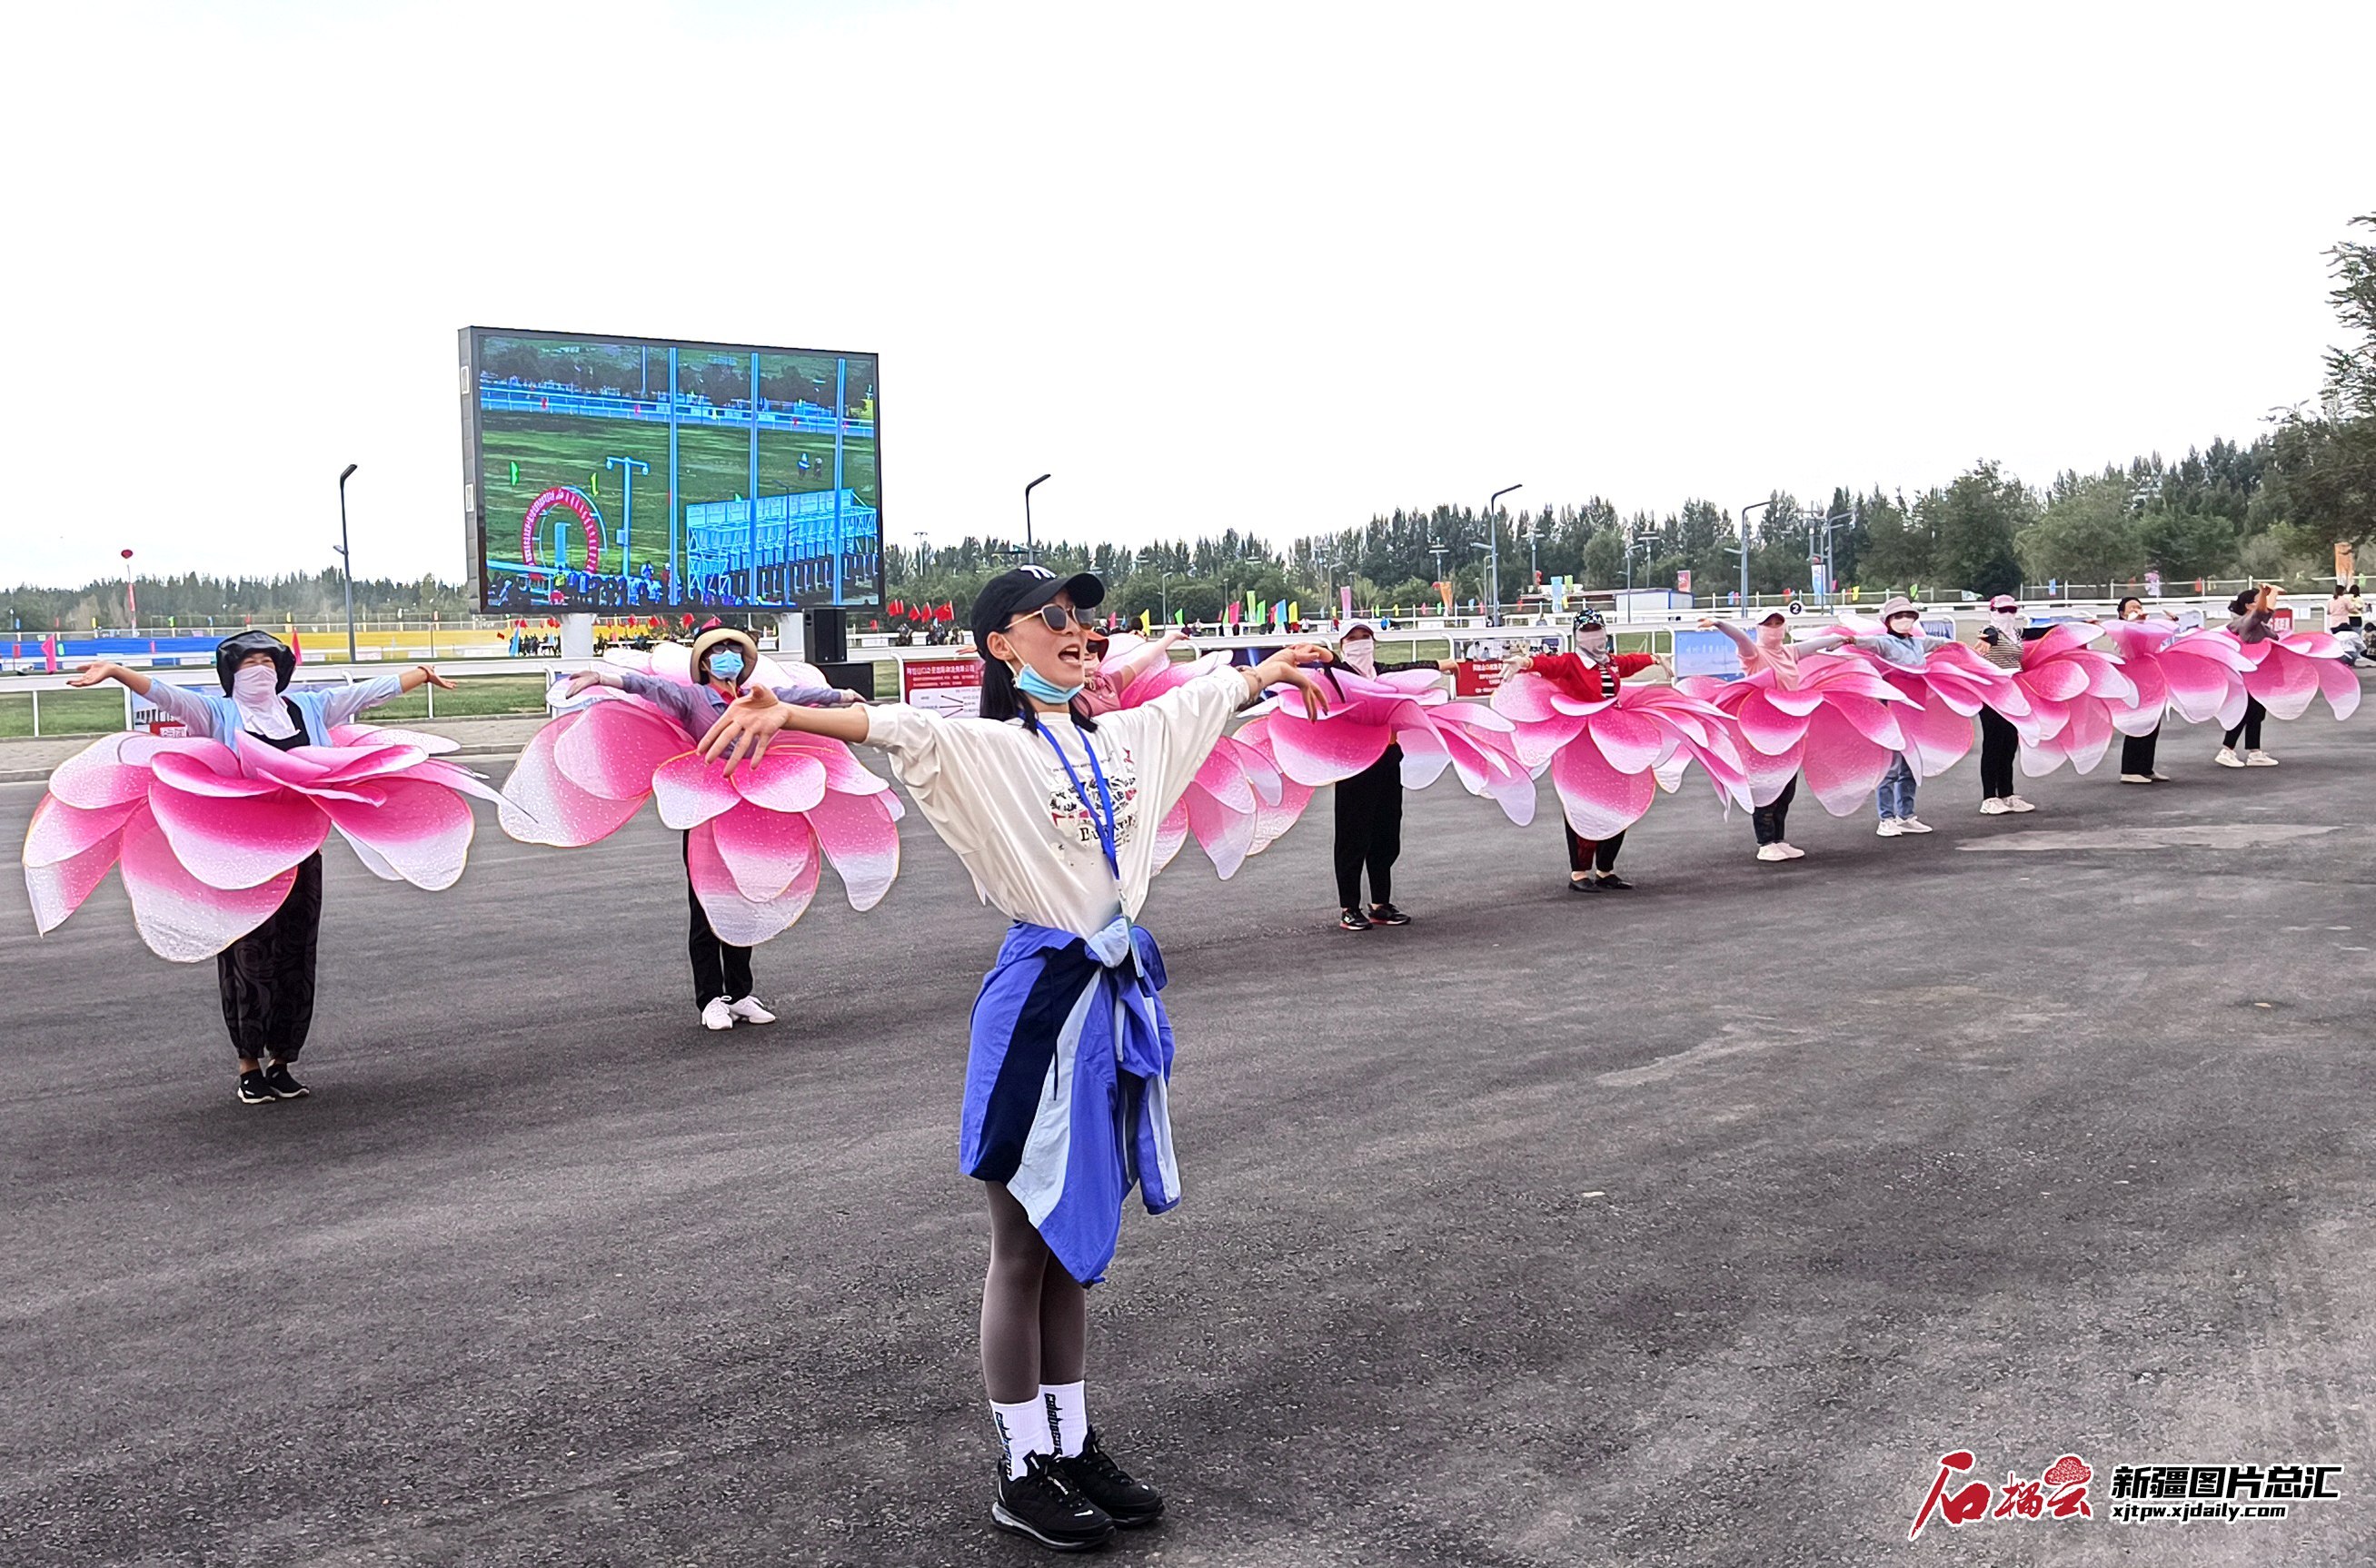 新疆维吾尔自治区第十届少数民族传统体育运动会开幕式开场歌舞《中华手拉手》排练现场。（来源：胡辉辉提供）